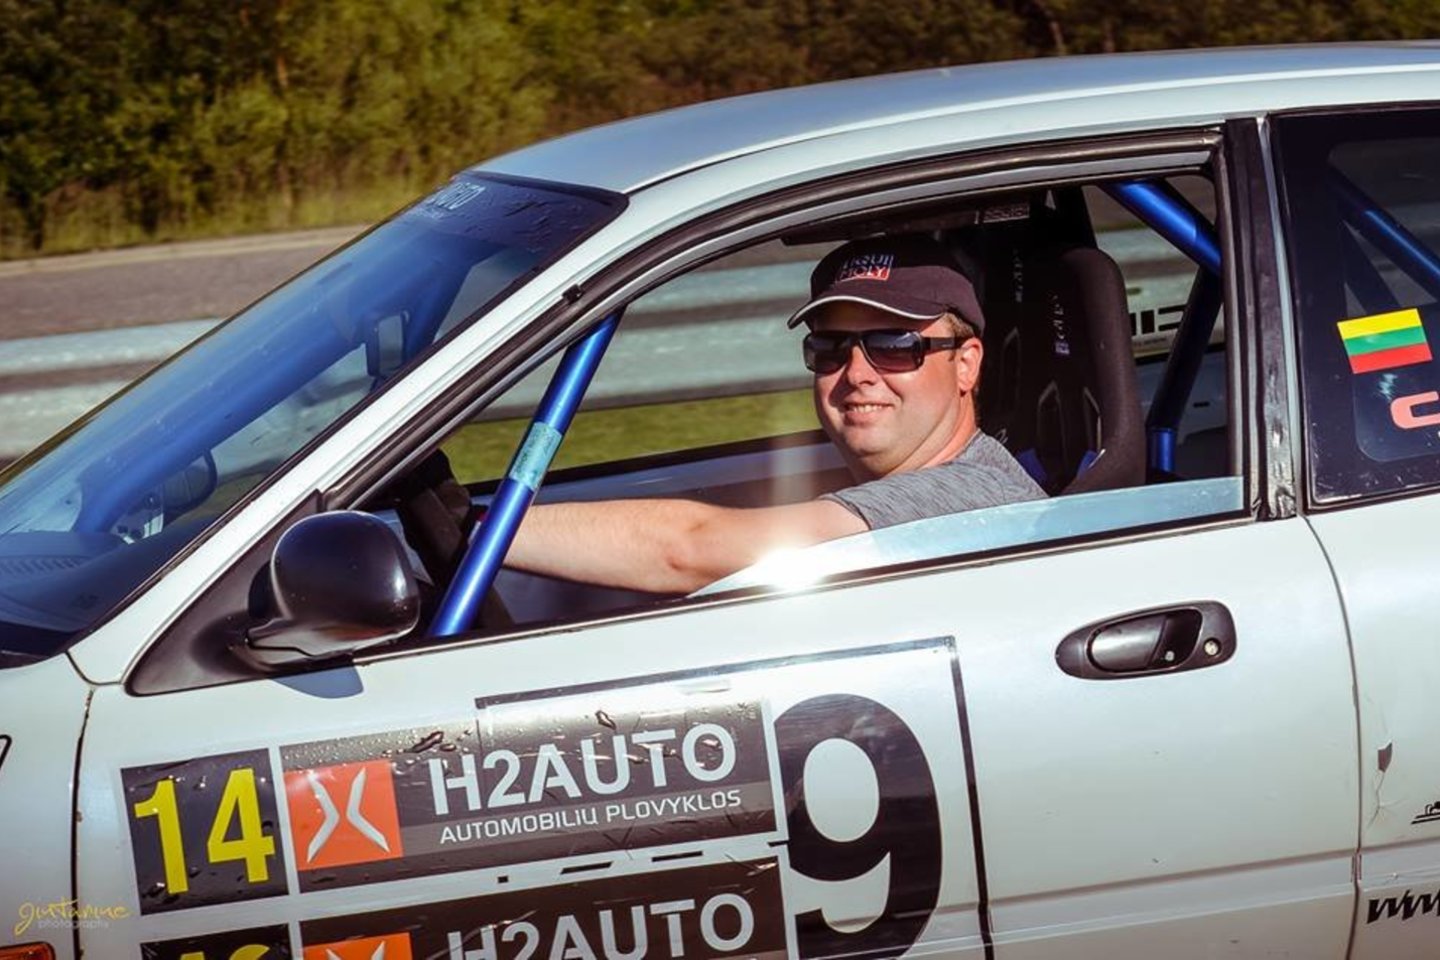  Palangoje vykusio „H2auto“ greituminio slalomo čempionato etapo akimirkos.<br> Gintarinė Photography nuotr.